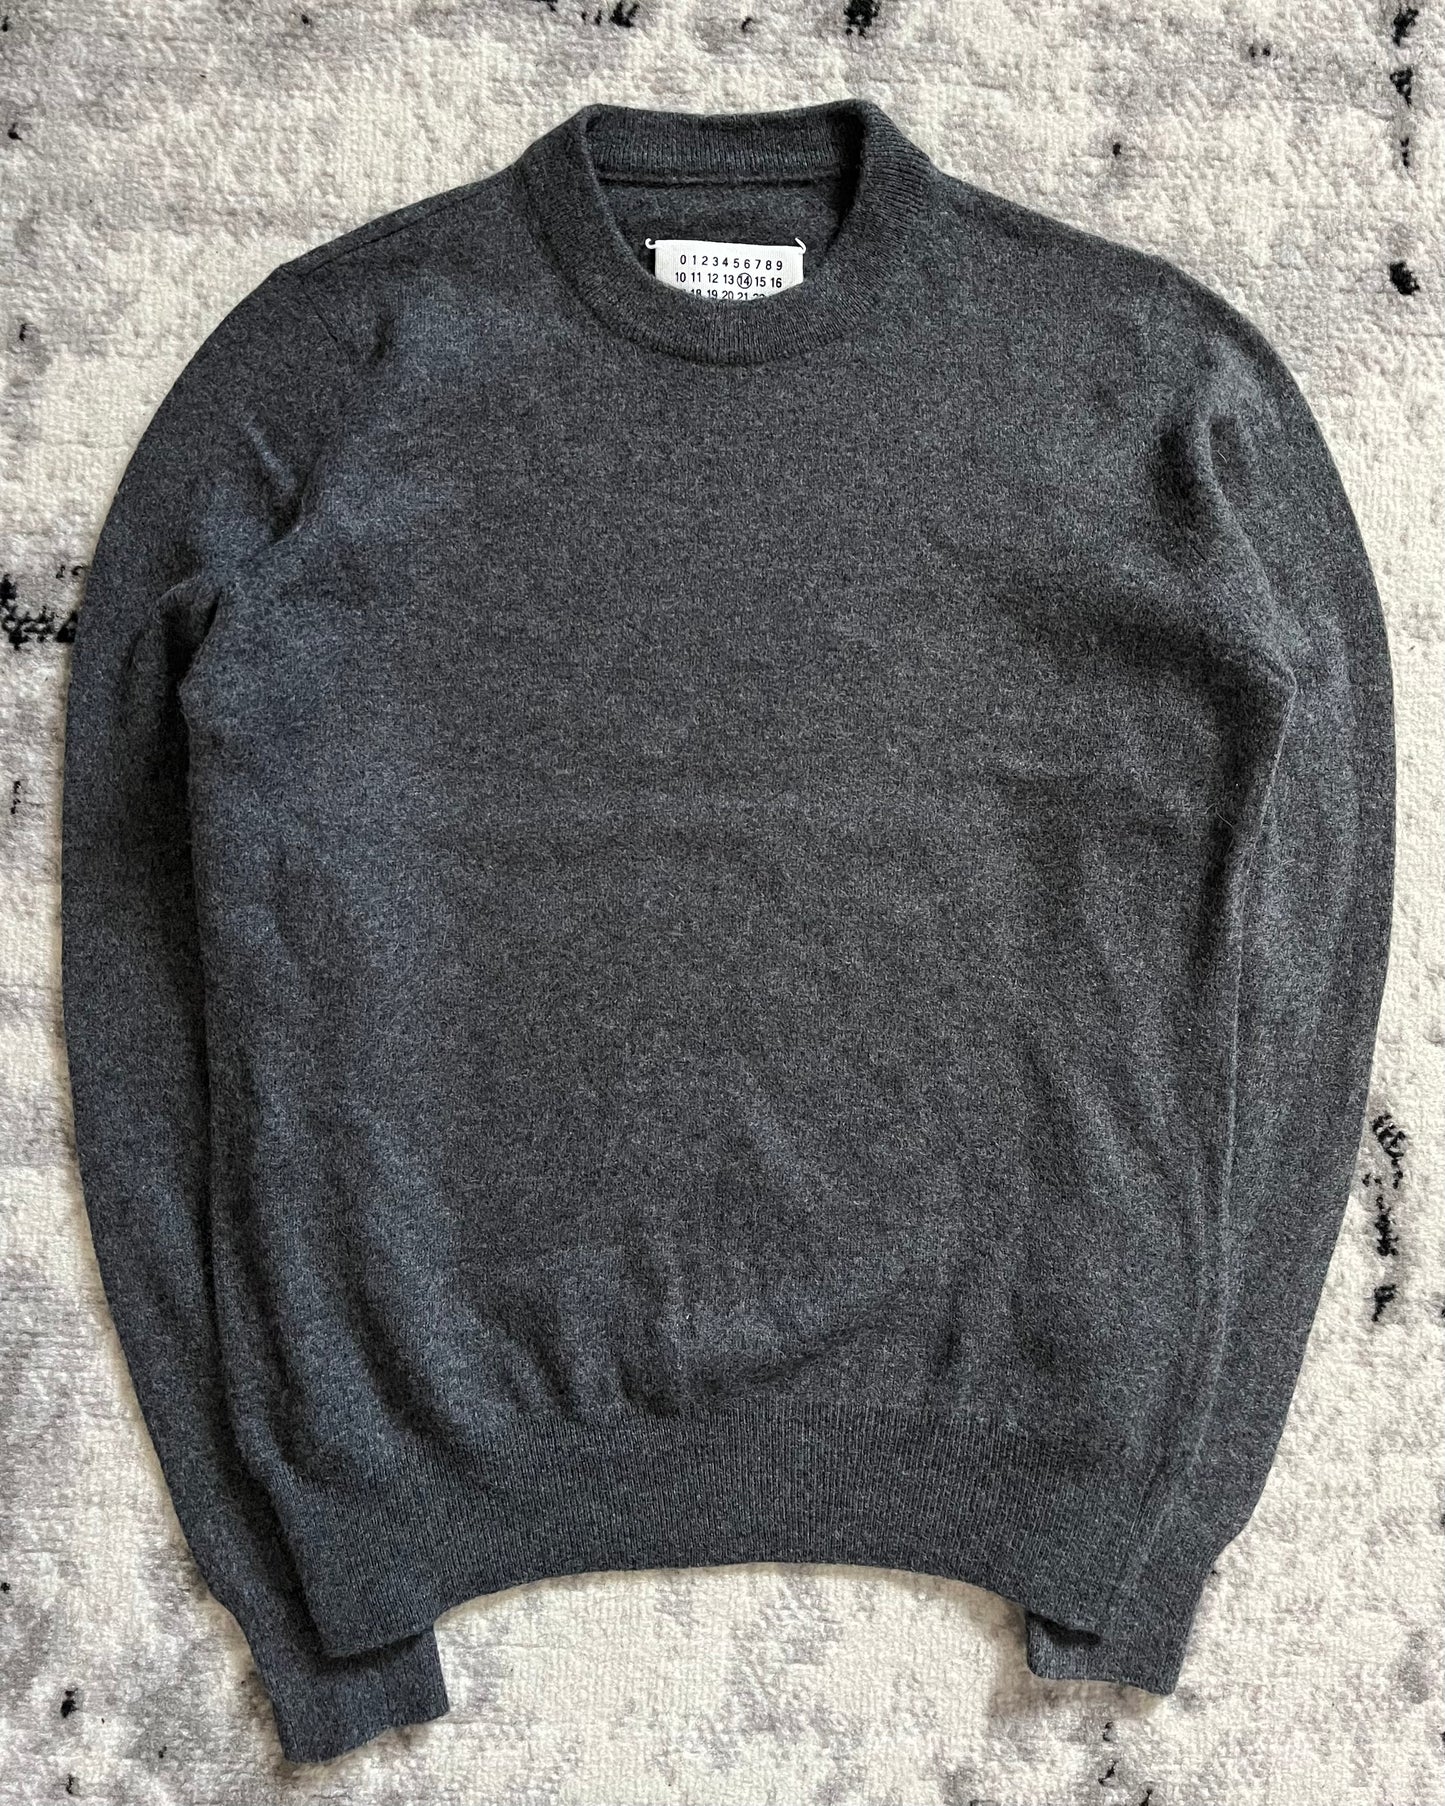 AW2014 Maison Margiela Wool Grey Sweater (XS/S)